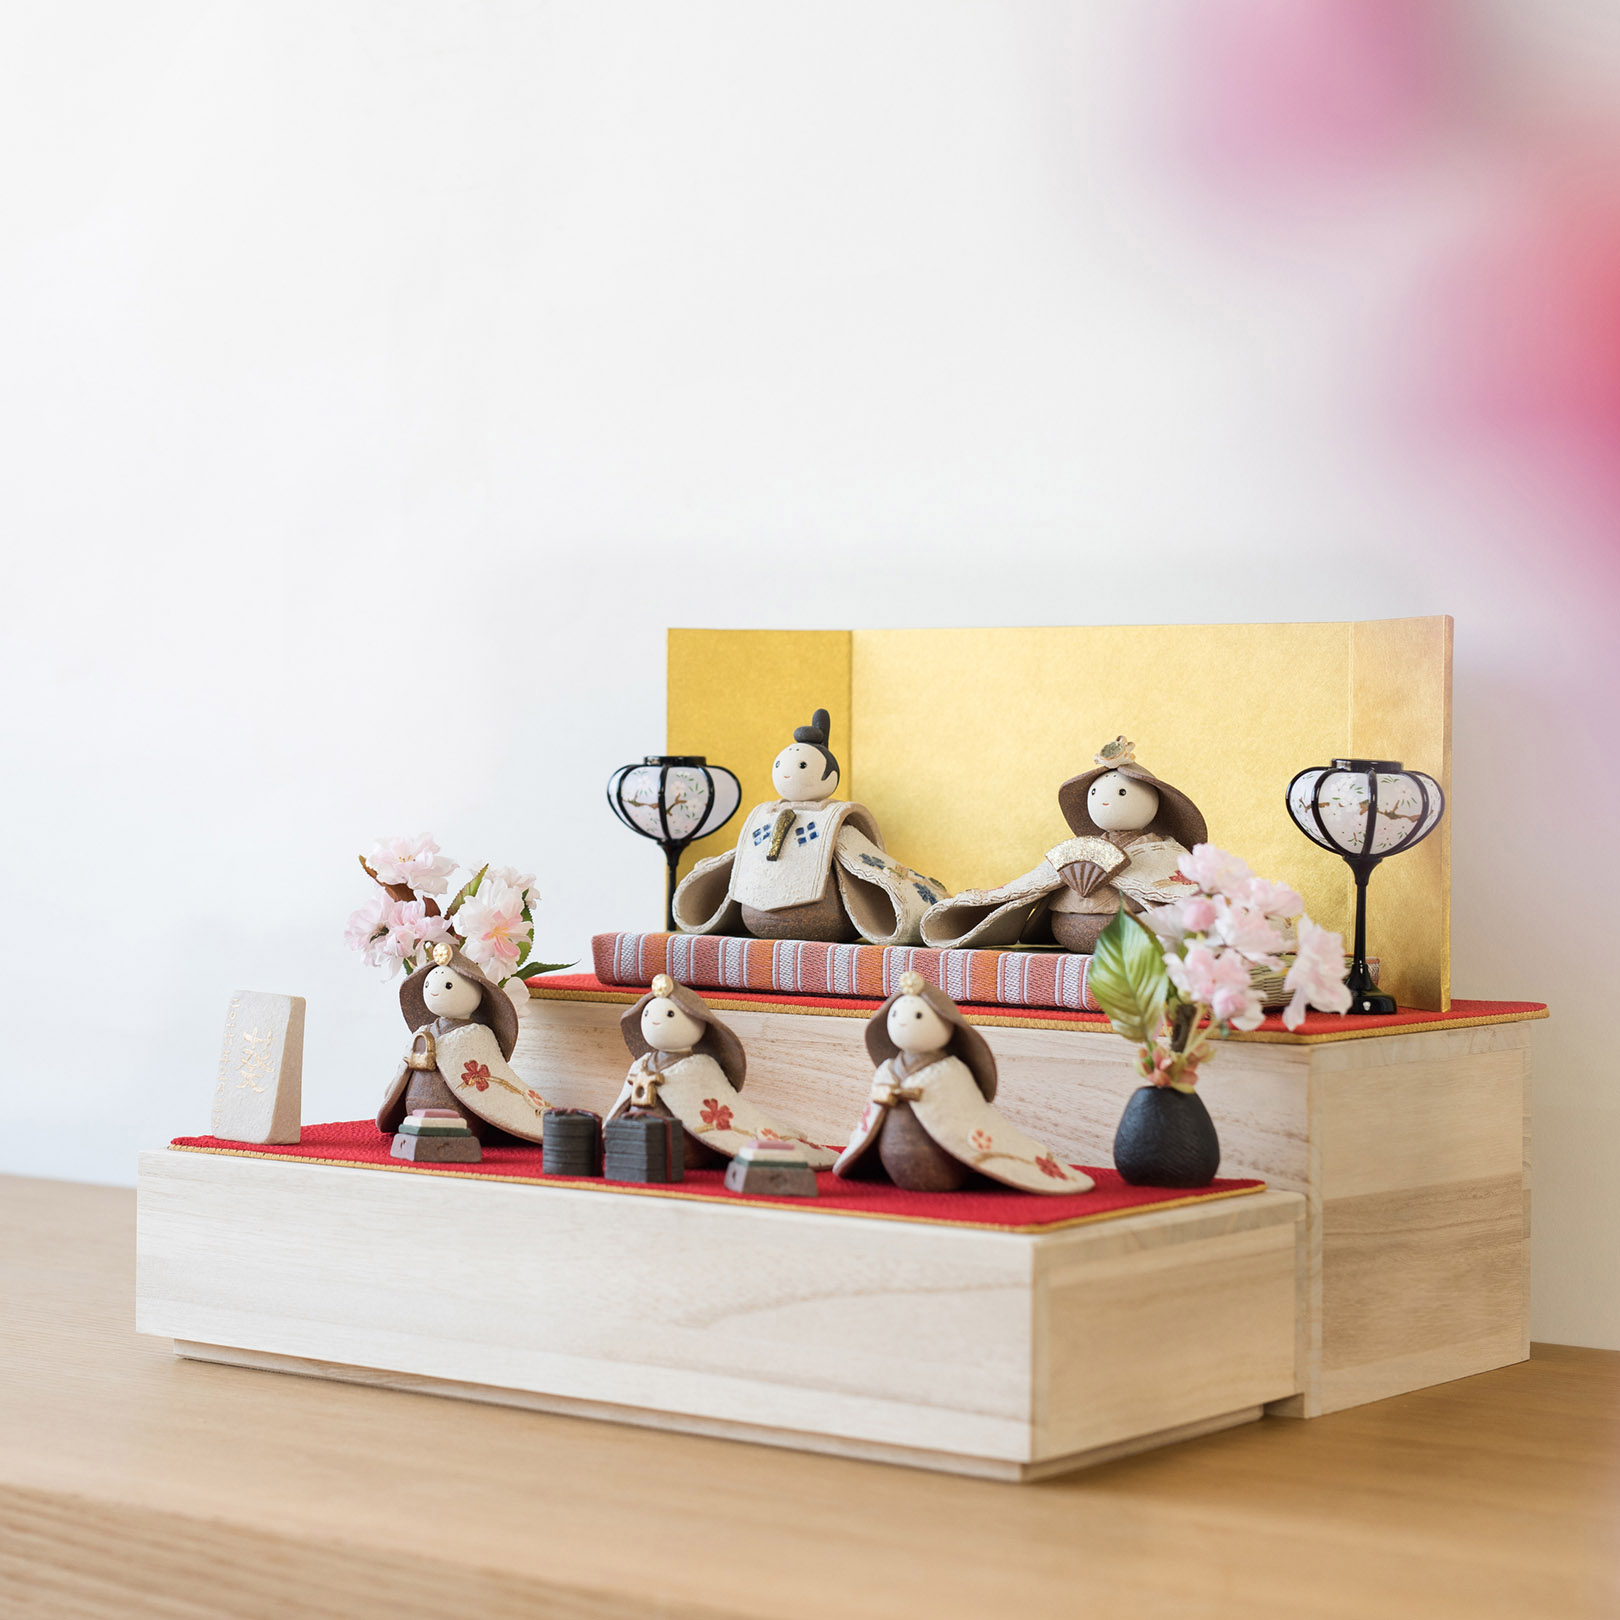 信楽焼の陶器の雛人形段飾りを飾っている画像